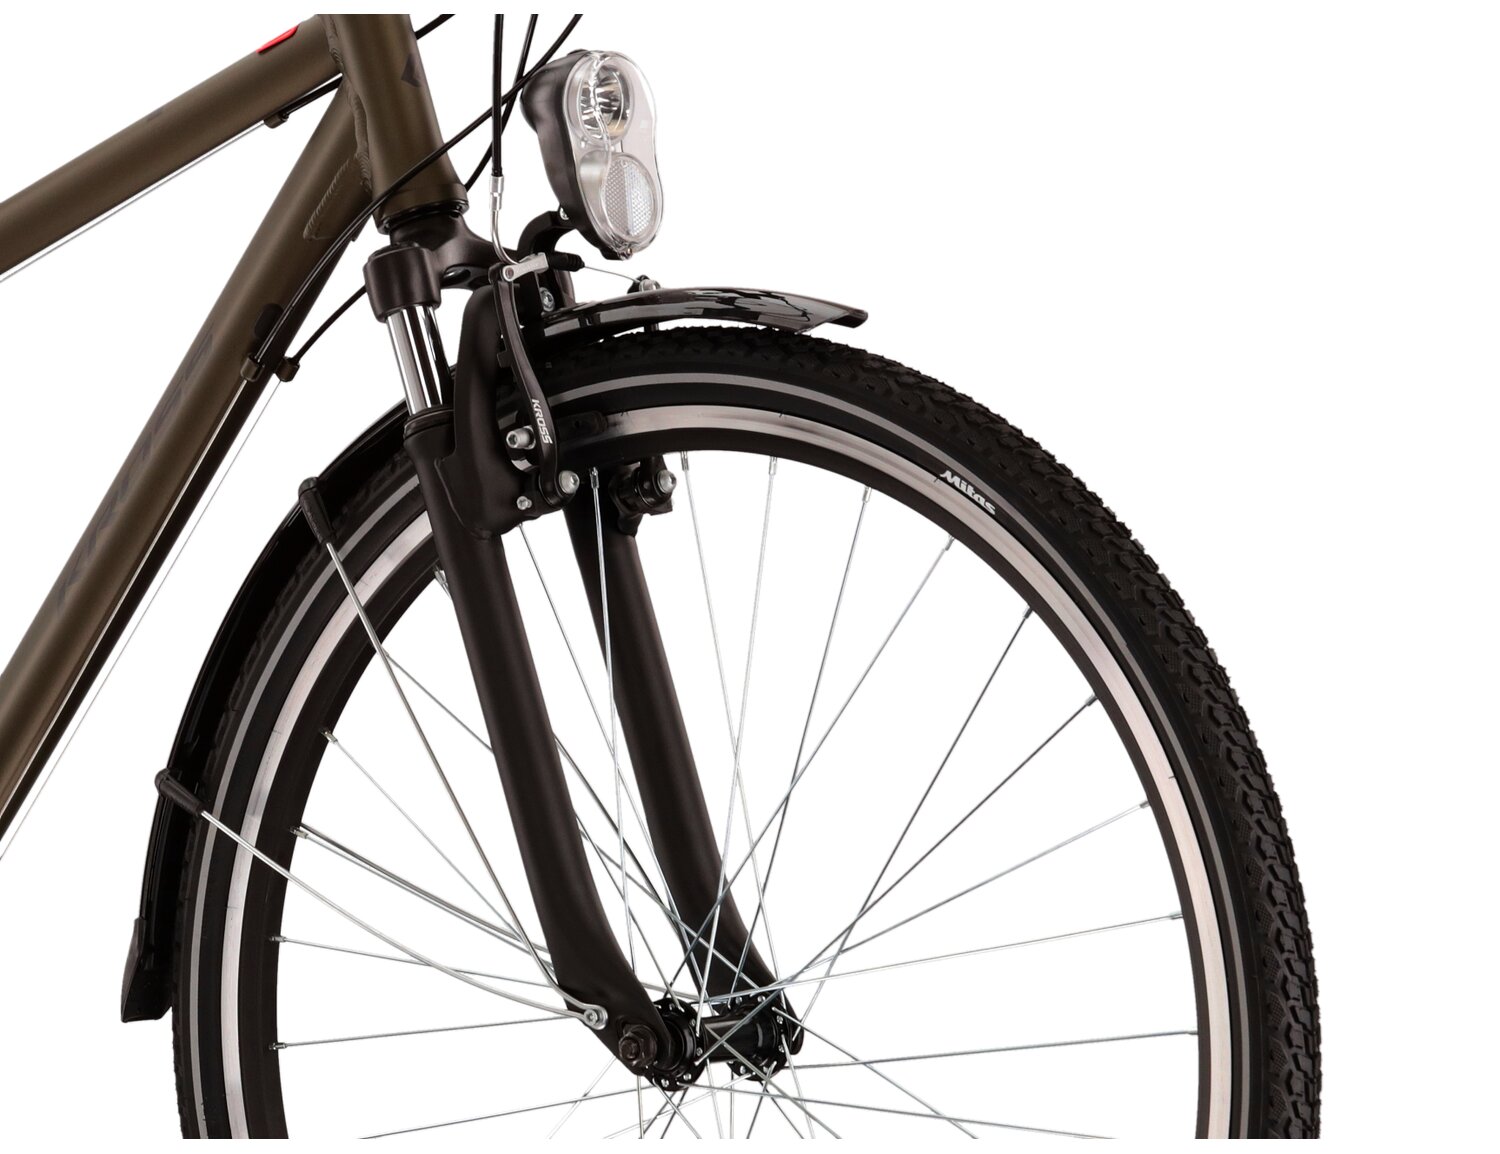 Aluminowa rama, amortyzowany widelec KROSS oraz opony Wanda w rowerze damskim KROSS Trans 2.0 